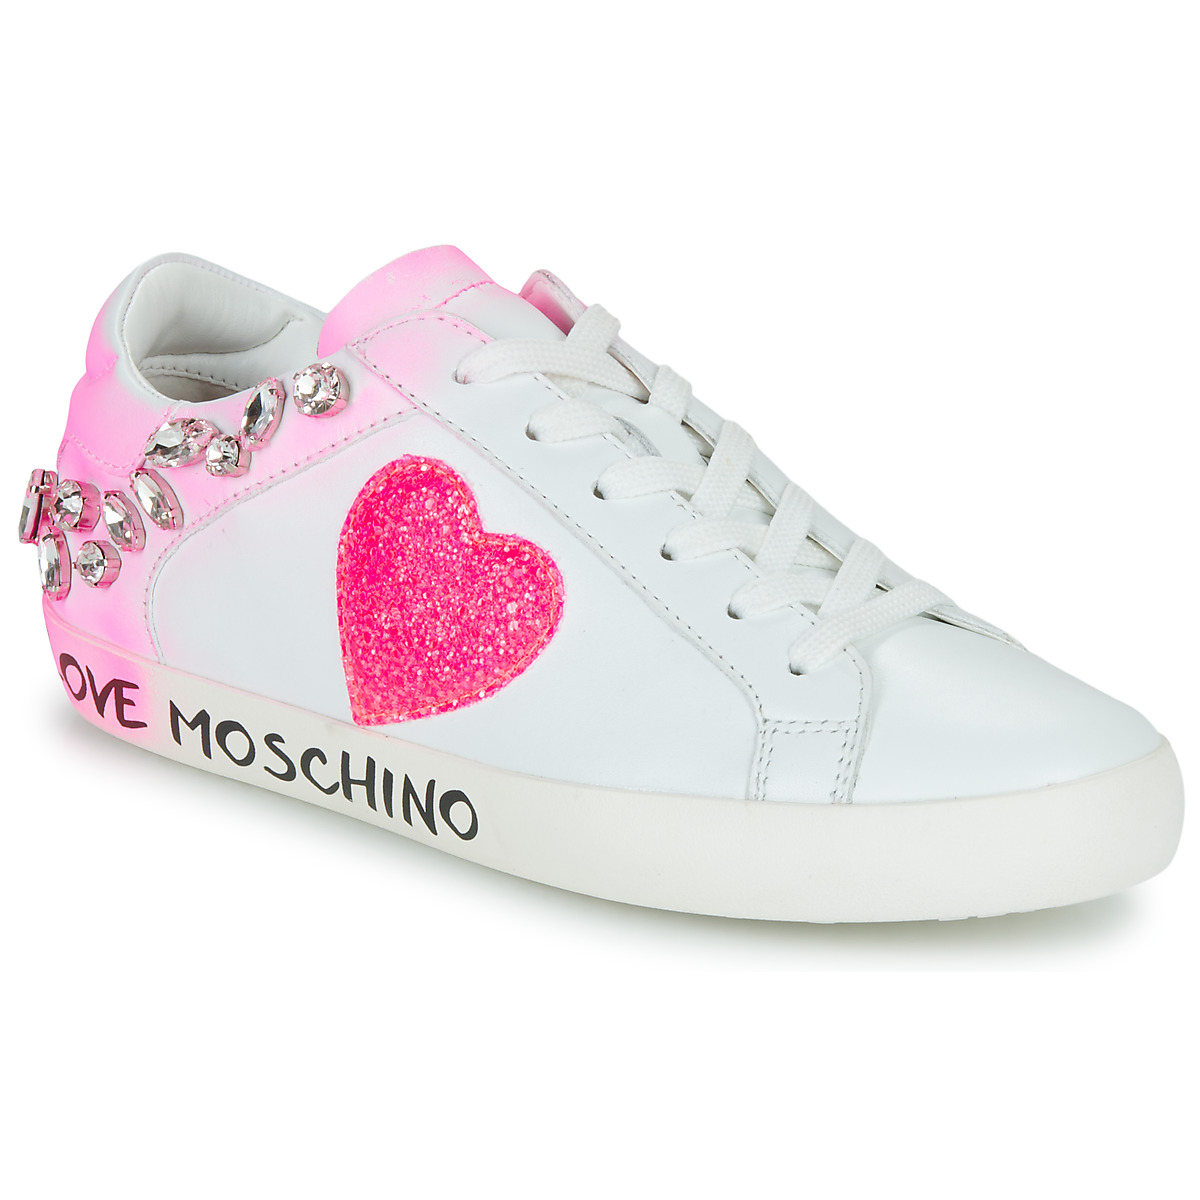 Love Moschino Free Love Pink